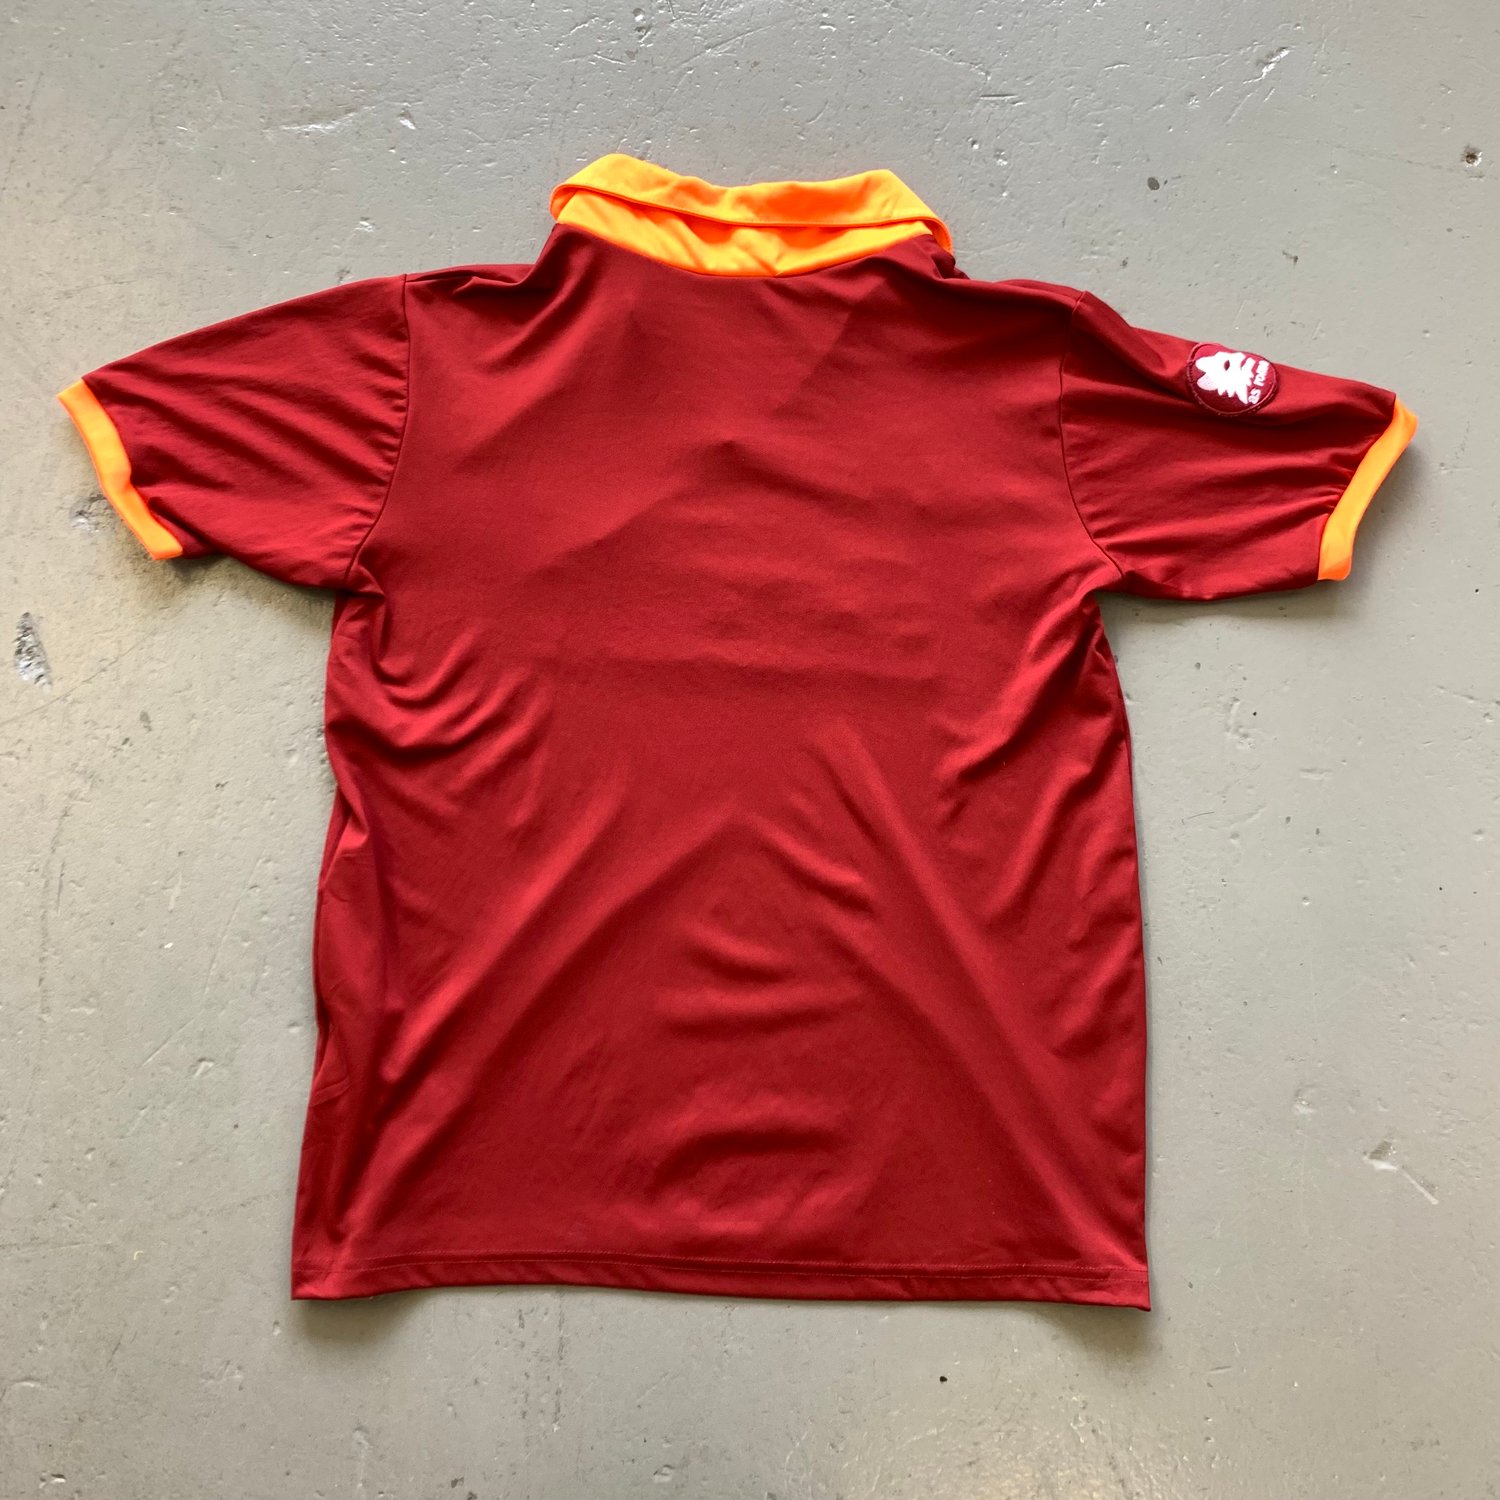 Image of 1984 Roma home shirt size xl barilla kappa 